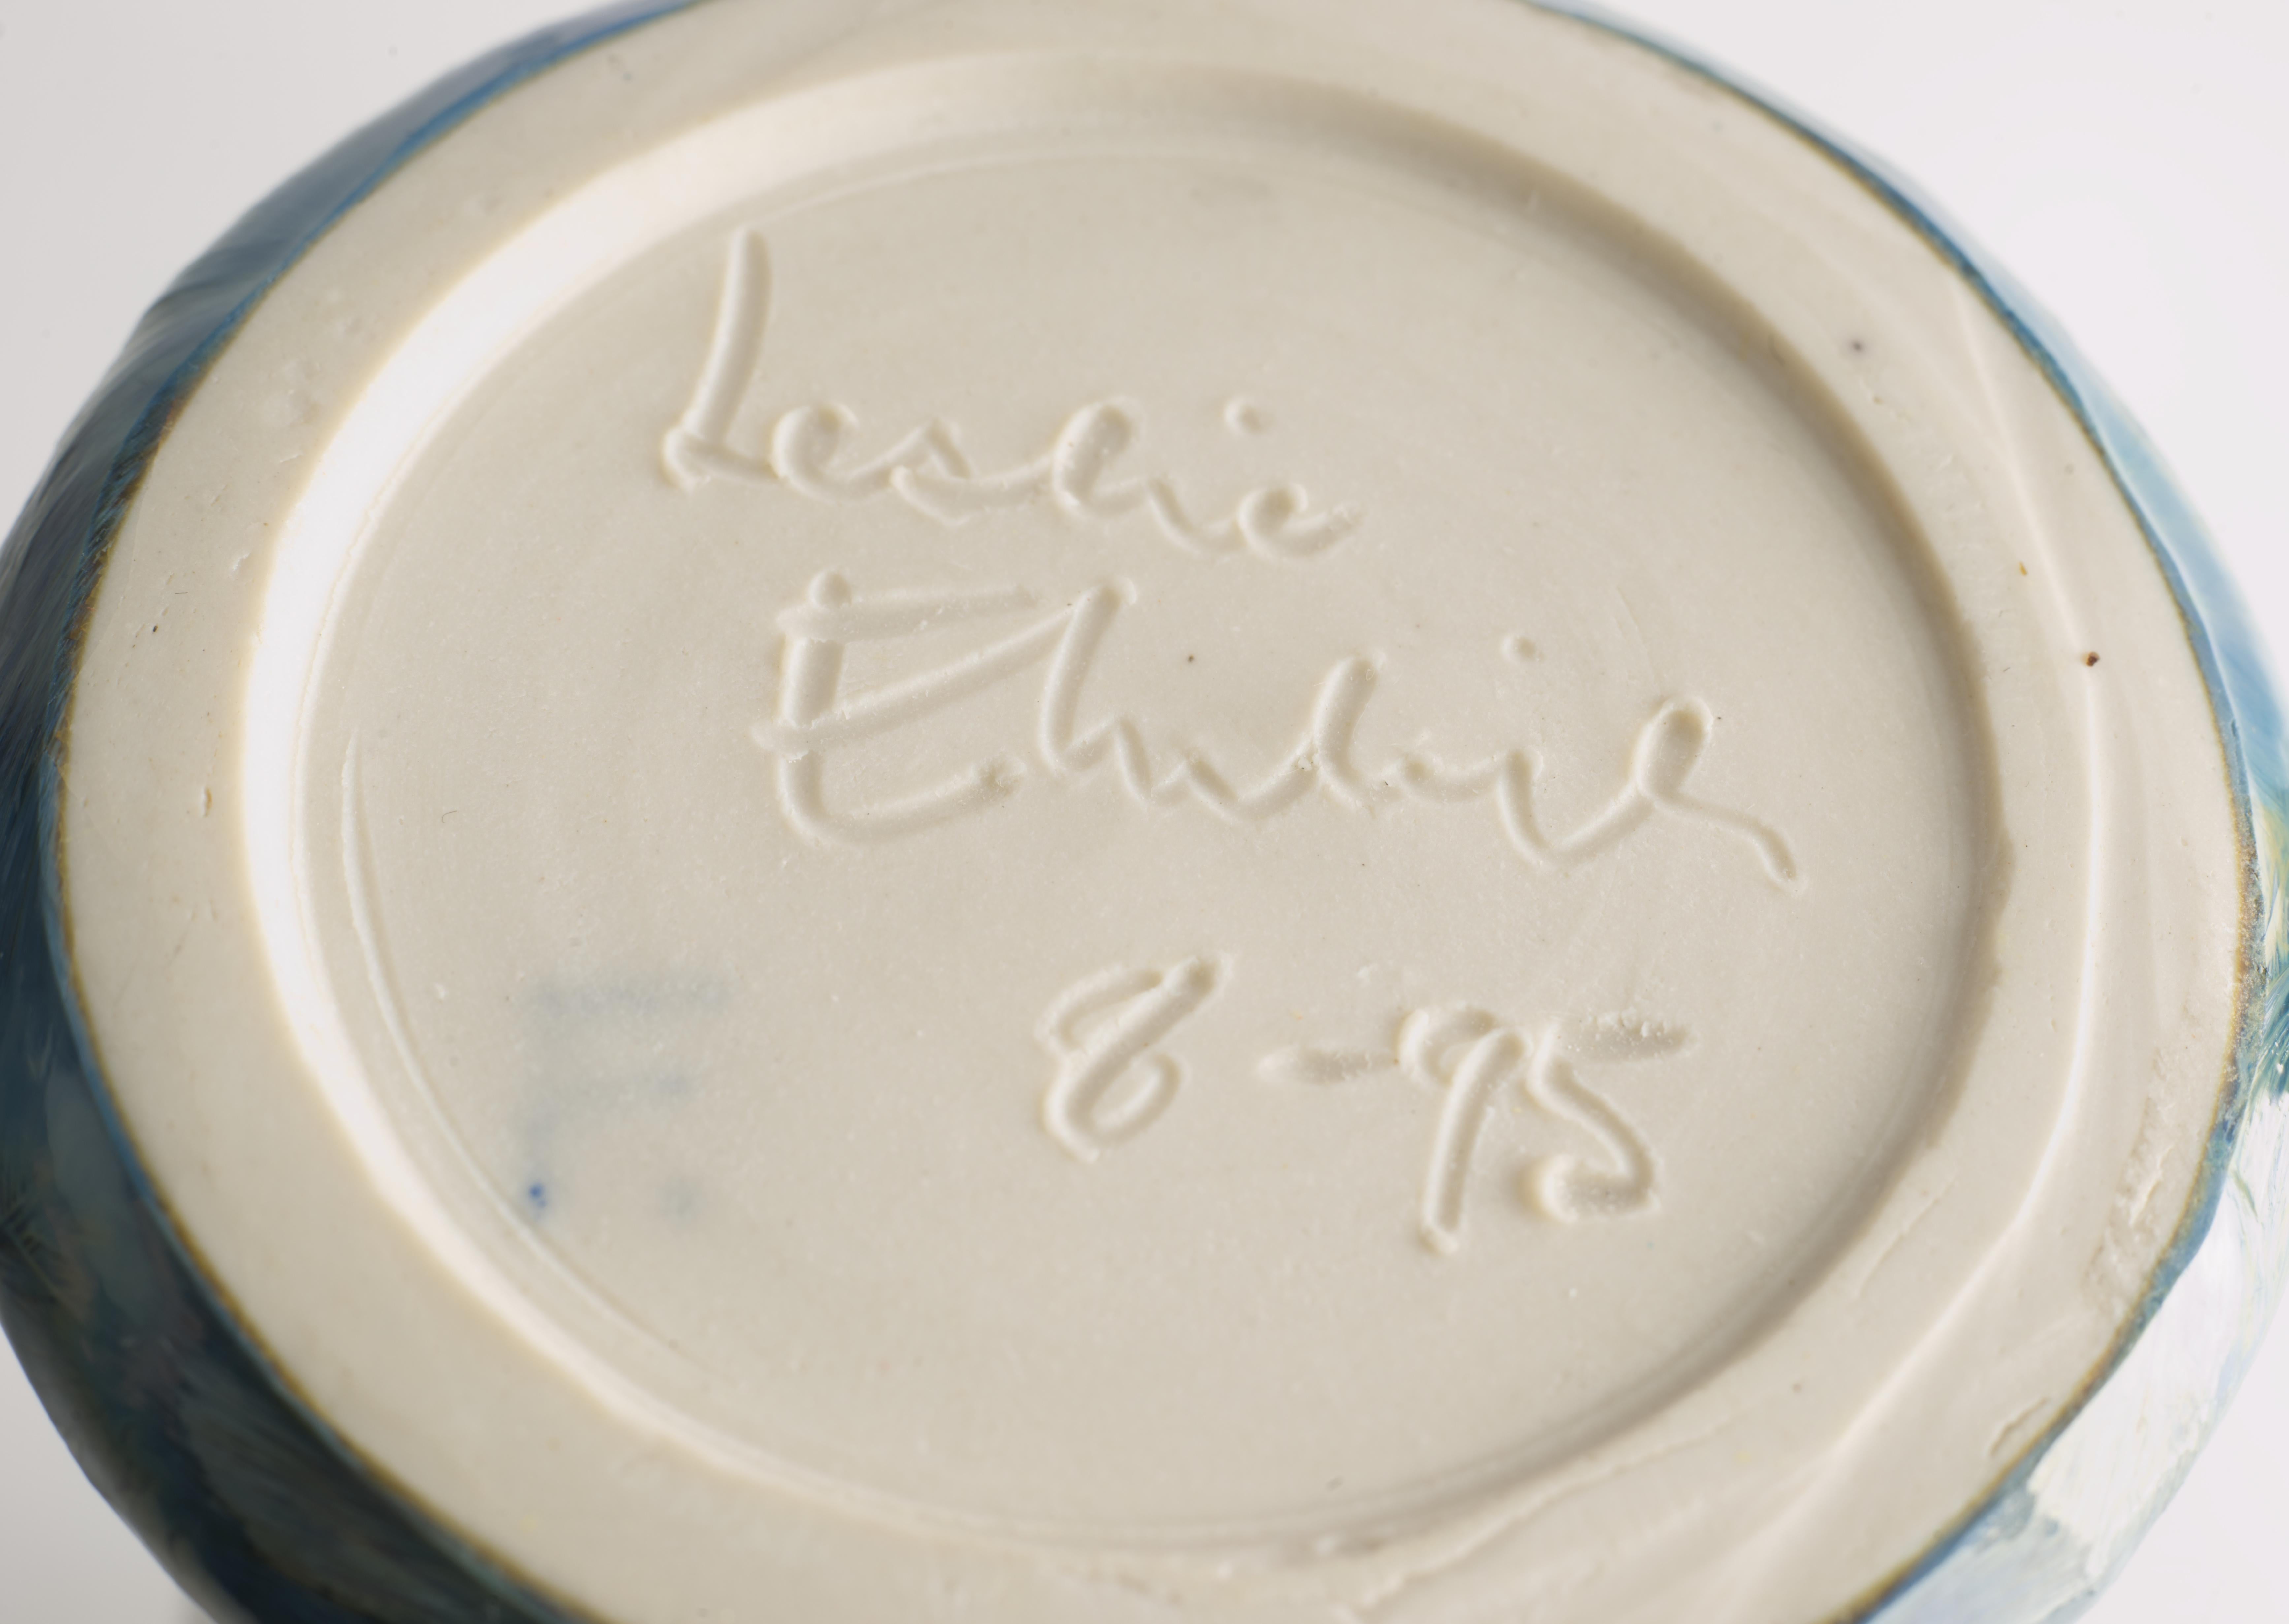 Leslie Ehrlich Crystalline Glaze Bud Vase Signed Art Pottery  For Sale 2